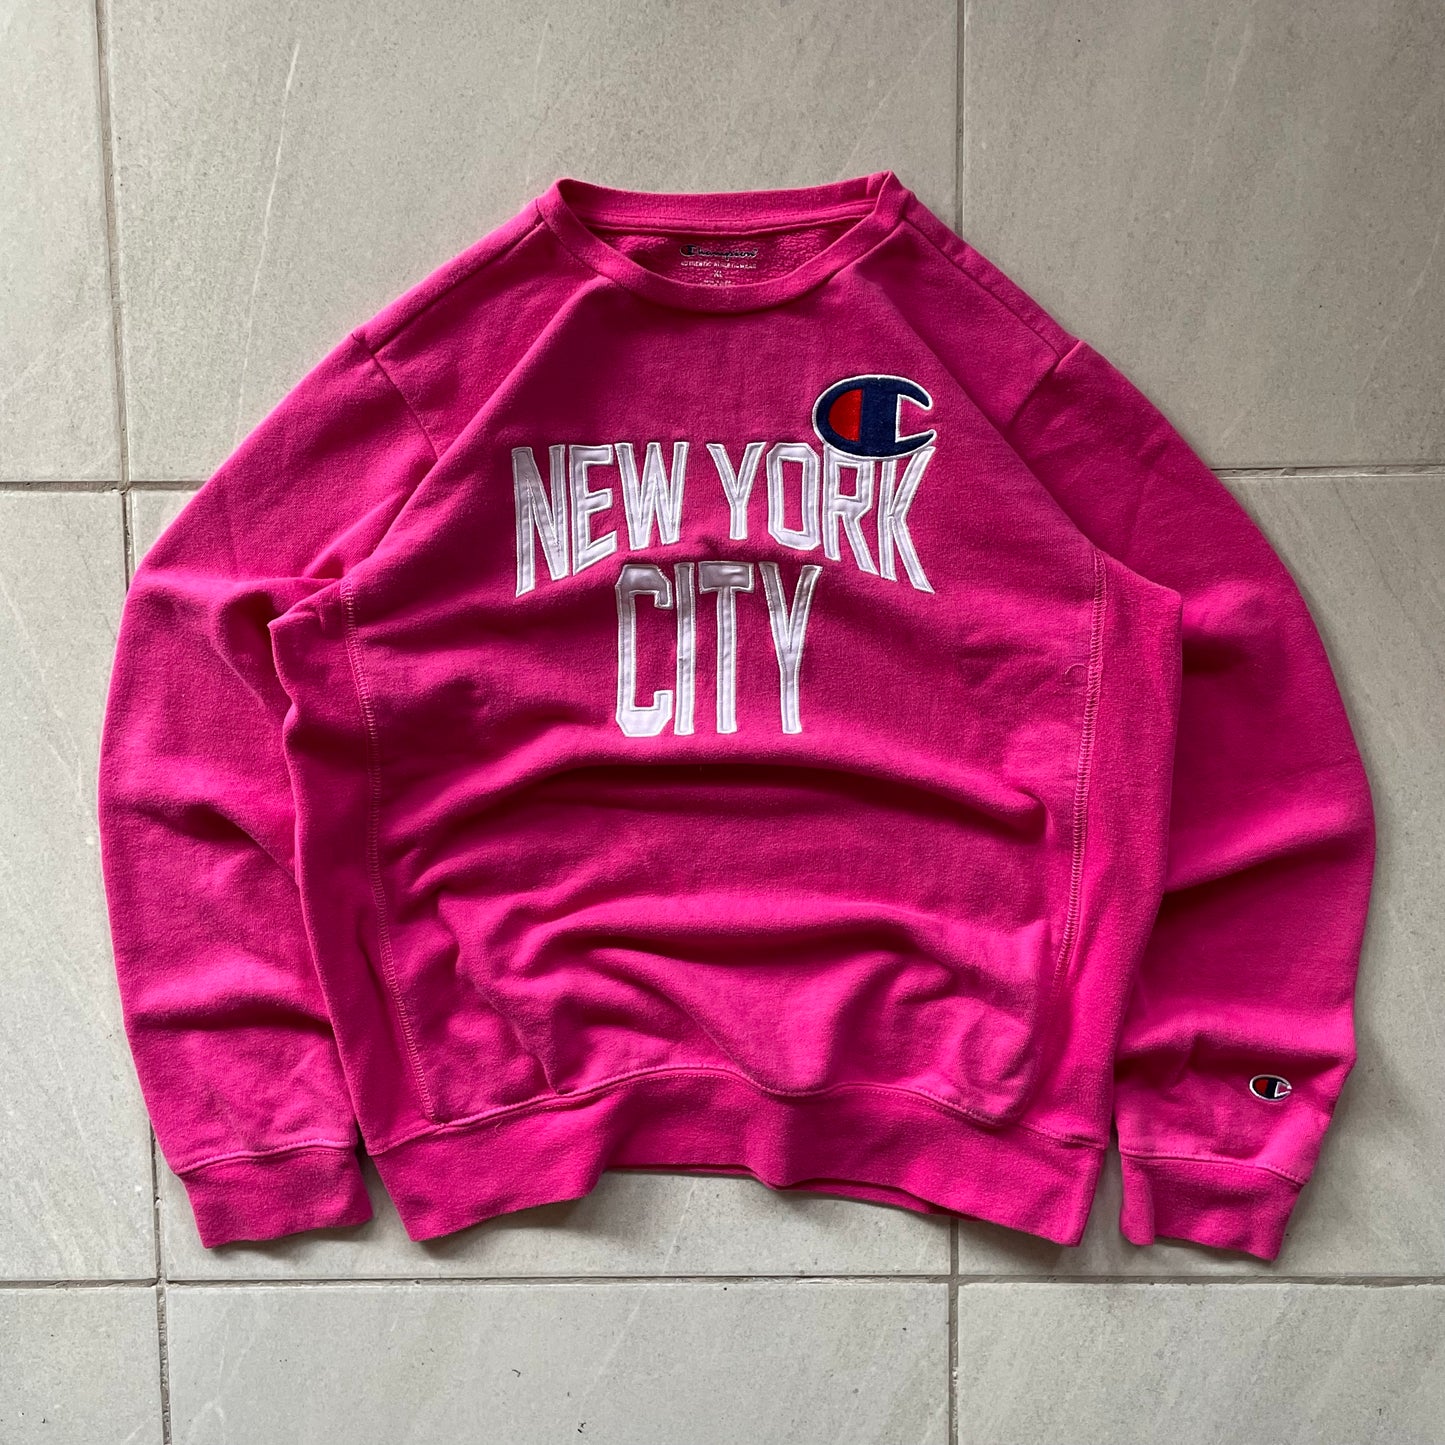 (M boxy) Champion Crewneck Pink NYC